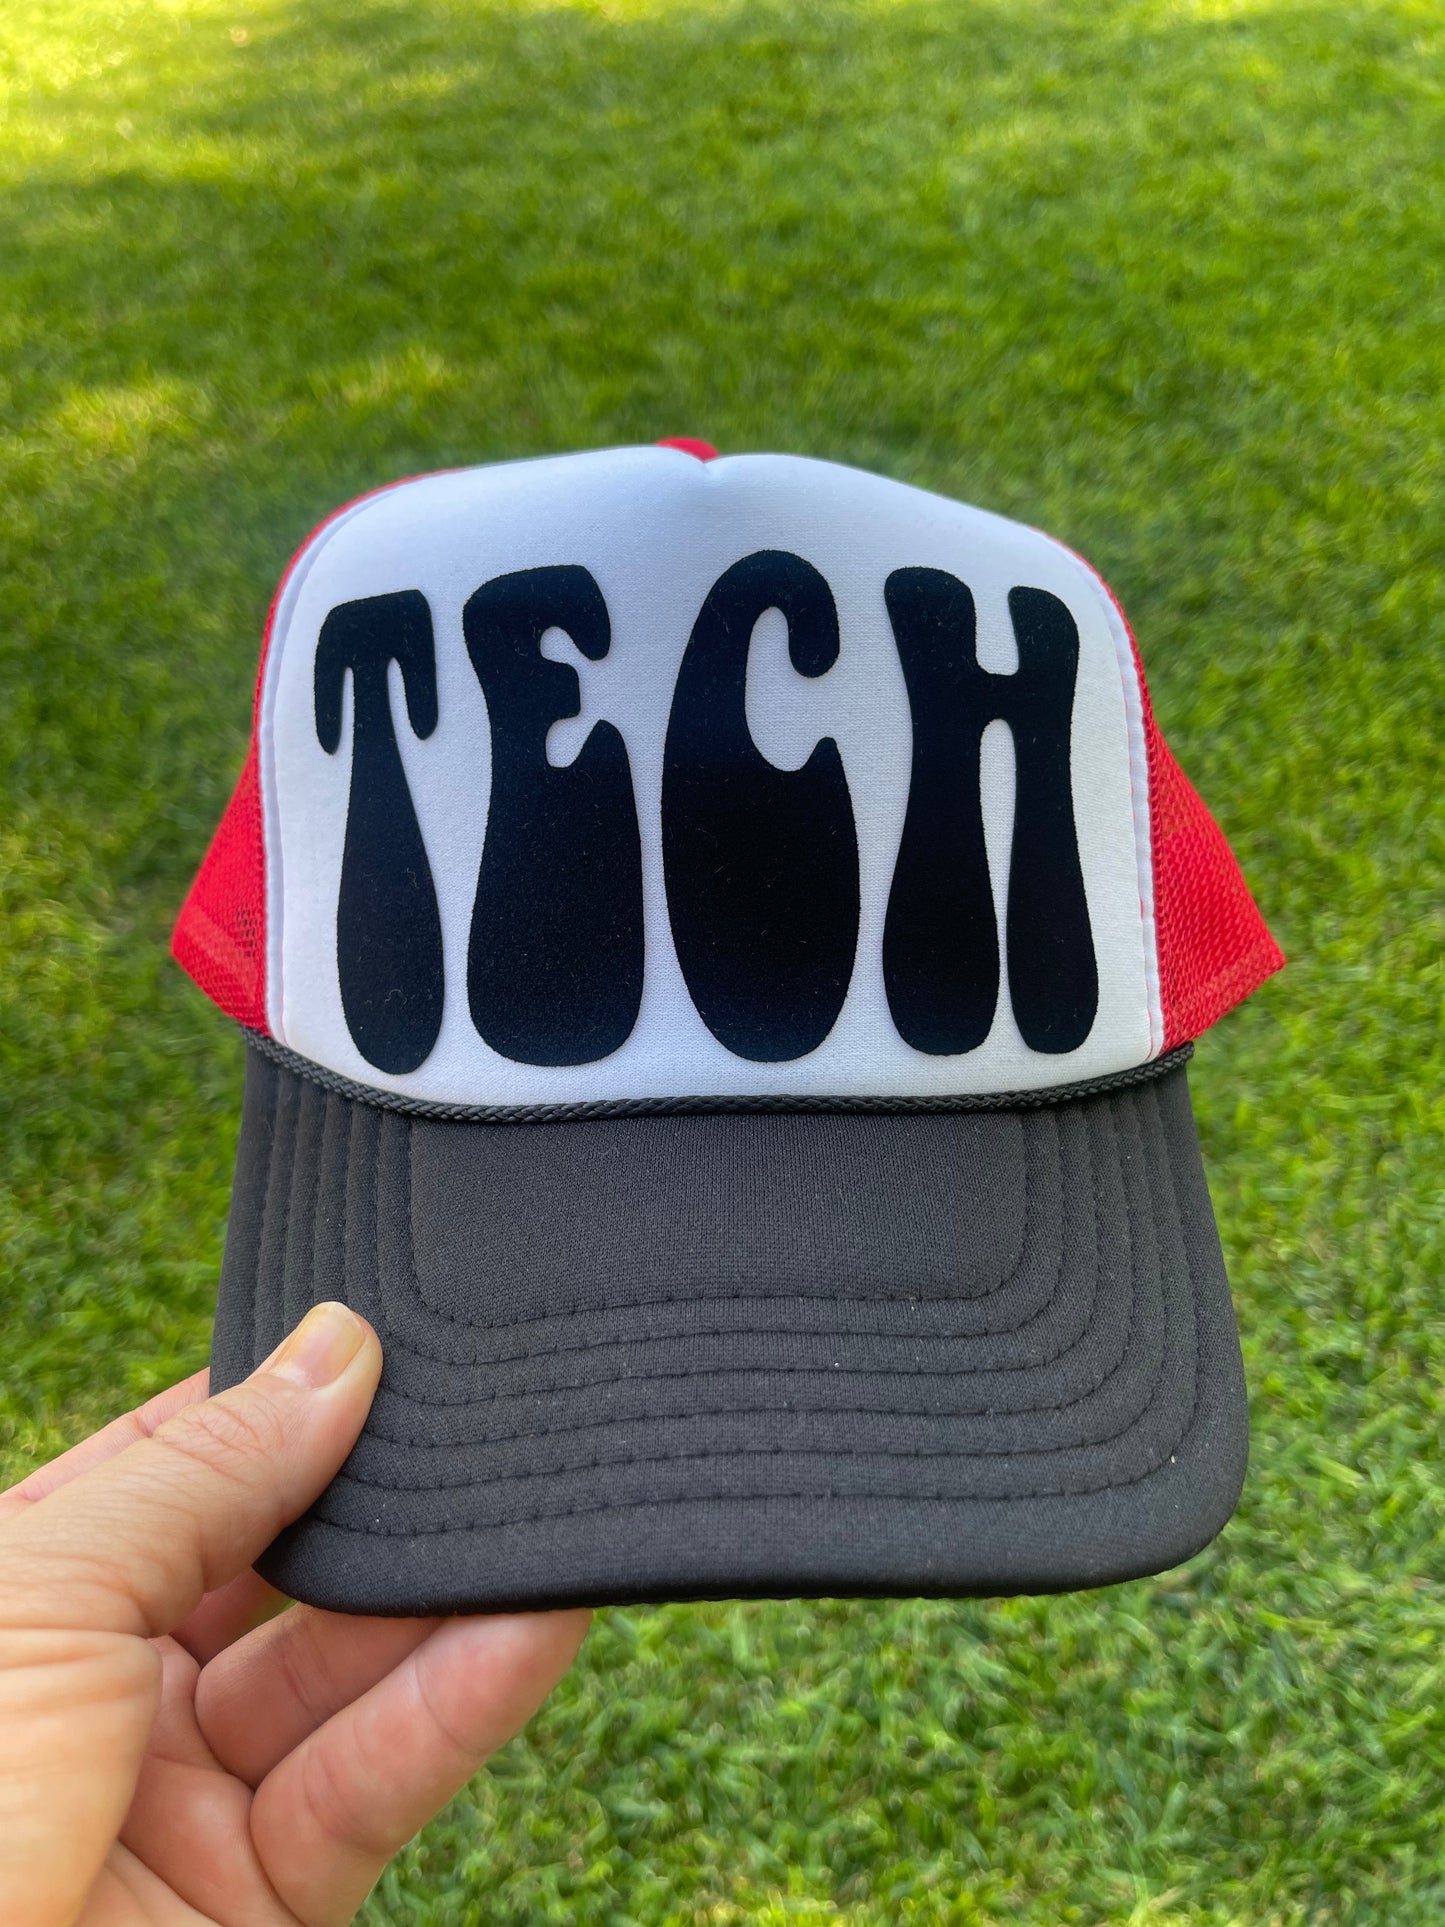 TECH groovy trucker hat